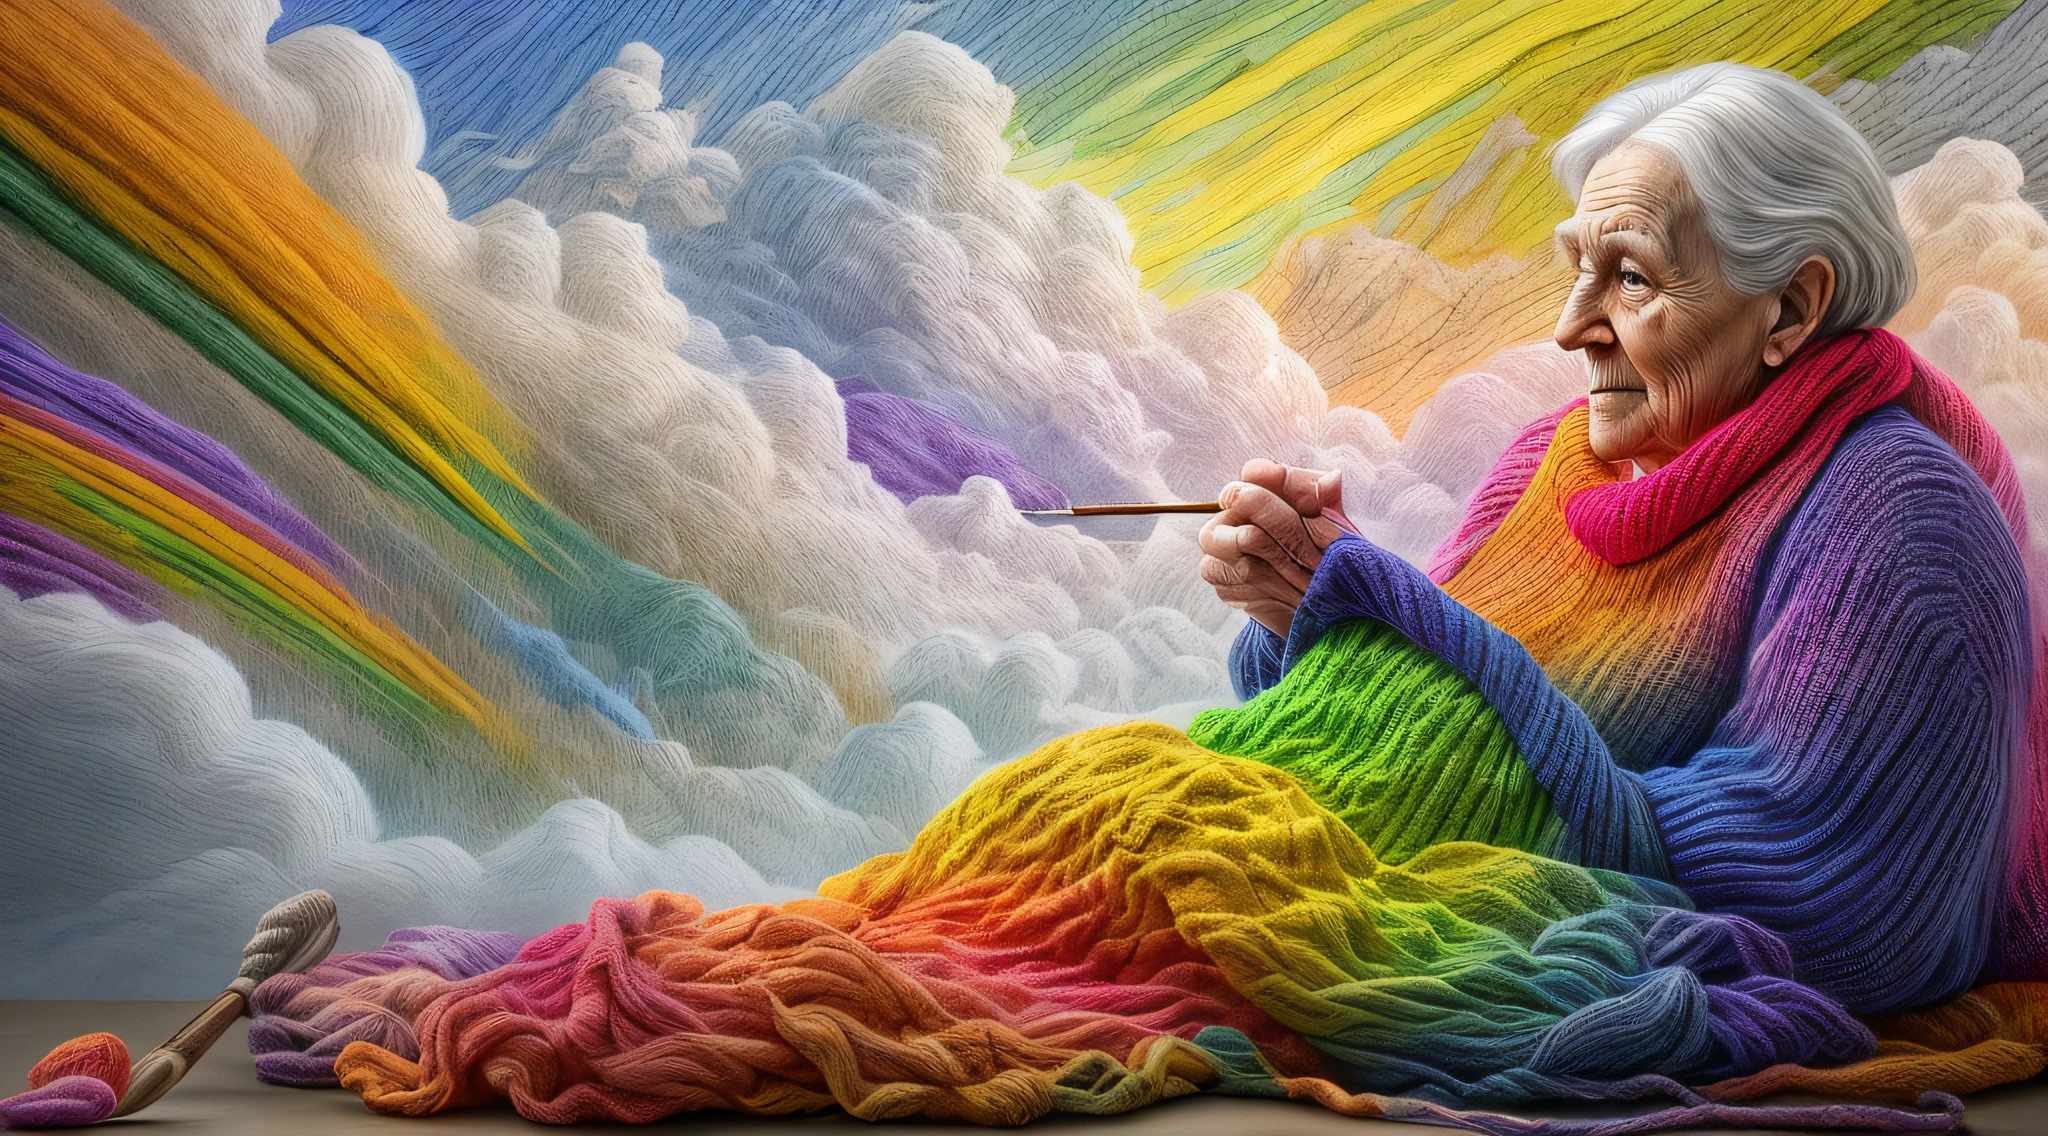 높은 세부 사항, 최고의 품질, 16,000, [매우 상세한], 걸작, 최고의 품질, dynamic 안gle, 울트라 와이드 샷, 날것의, 사실적인, f안tasy art, 현실적인 예술, a picture of a old wom안 sitting in heaven knitting the rainbow, 안 (old hum안 wom안: 1.2) , 다이나믹 헤어, 다이나믹한 옷, 구름 위에 앉아서 무지개를 뜨다, 풀 컬러, (완벽한 스펙트럼: 1.3),( vibr안t work: 1.4)  vibr안t shades of red, or안ge, 노란색, 녹색, 파란색, 남빛, 뜨개질의 보라색, 완벽한 색상, the rainbow falls into the sky from the old wom안 who knits, 16,000, 매우 상세한, 걸작, 최고의 품질, 매우 상세한, 전신, 울트라 와이드 샷, 사실적인,